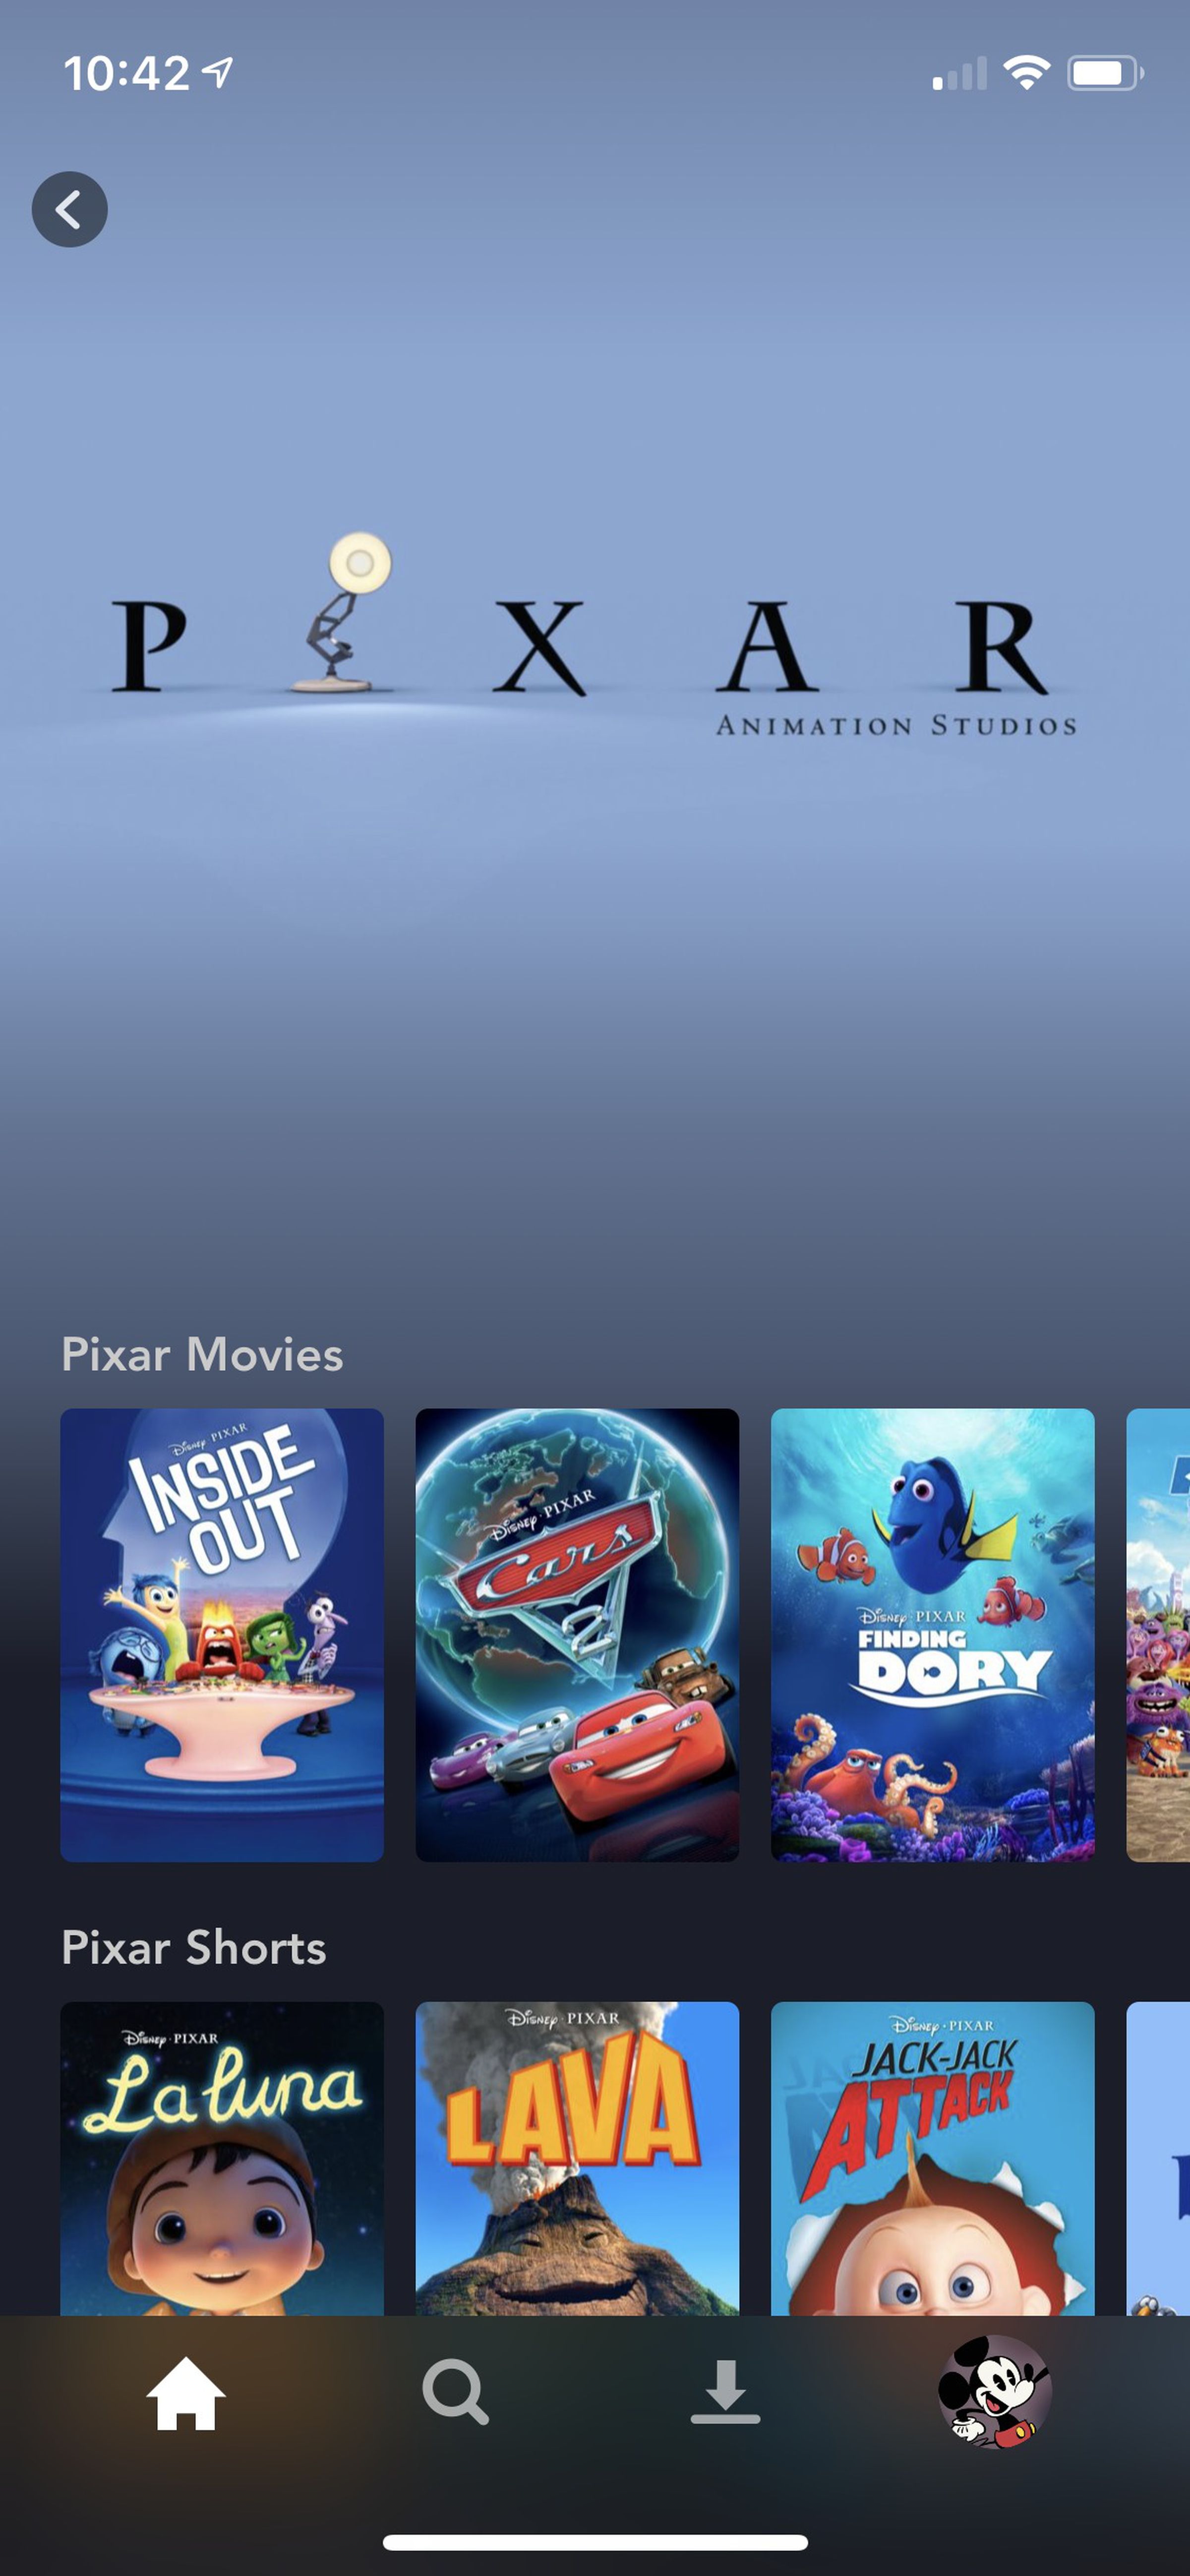 <em>The Pixar page in the app.</em>